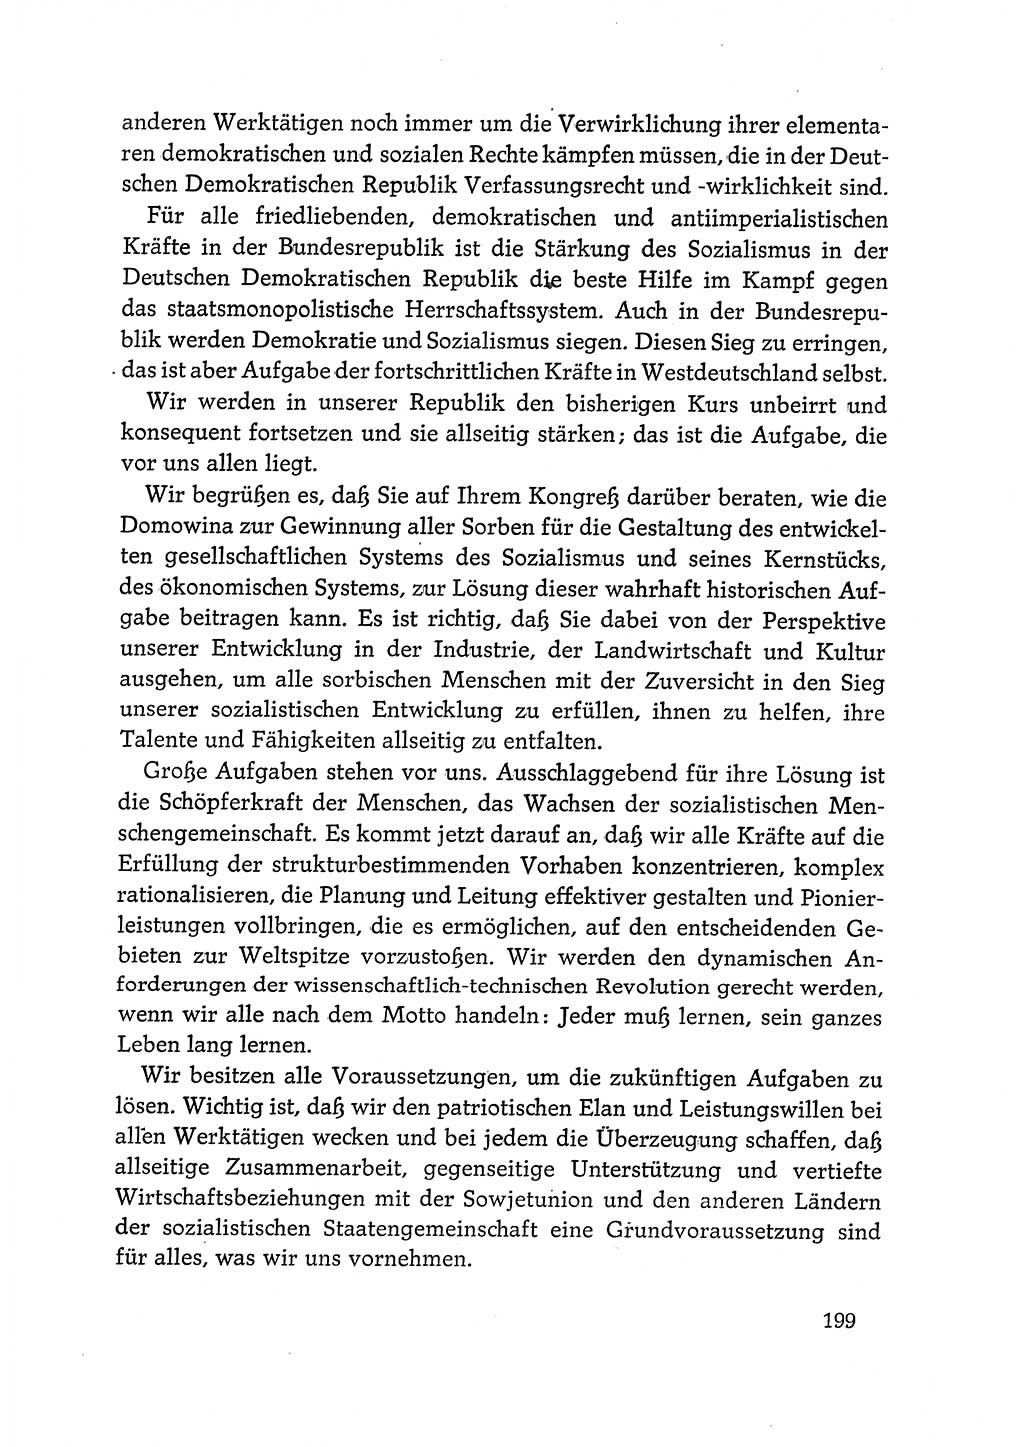 Dokumente der Sozialistischen Einheitspartei Deutschlands (SED) [Deutsche Demokratische Republik (DDR)] 1968-1969, Seite 199 (Dok. SED DDR 1968-1969, S. 199)